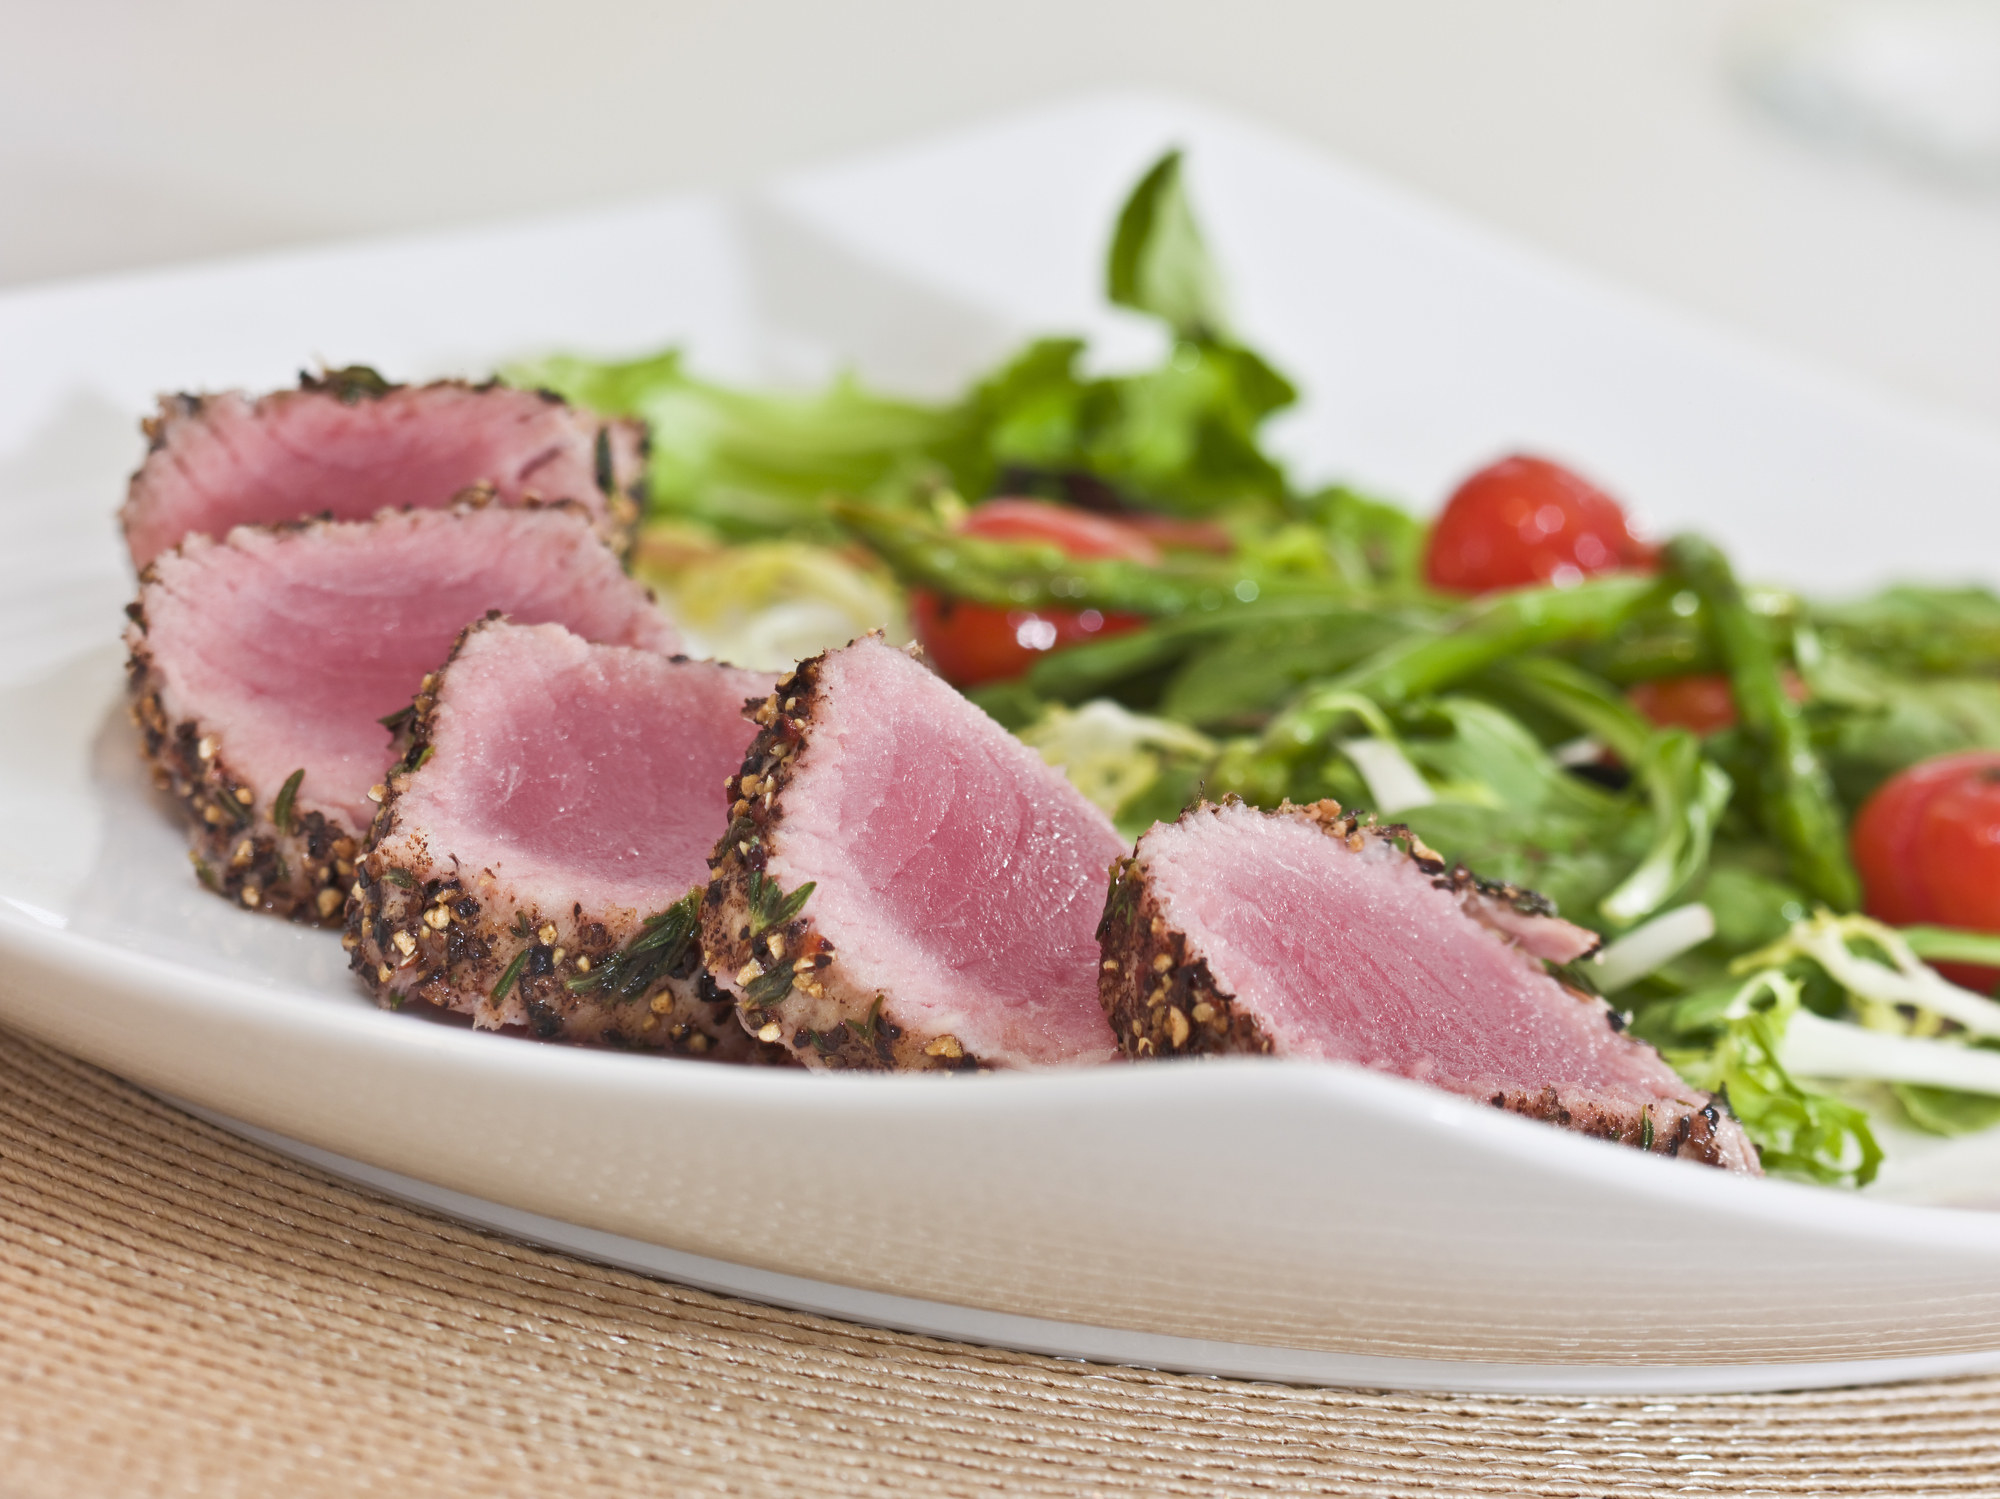 Seared tuna with sesame crust on salad